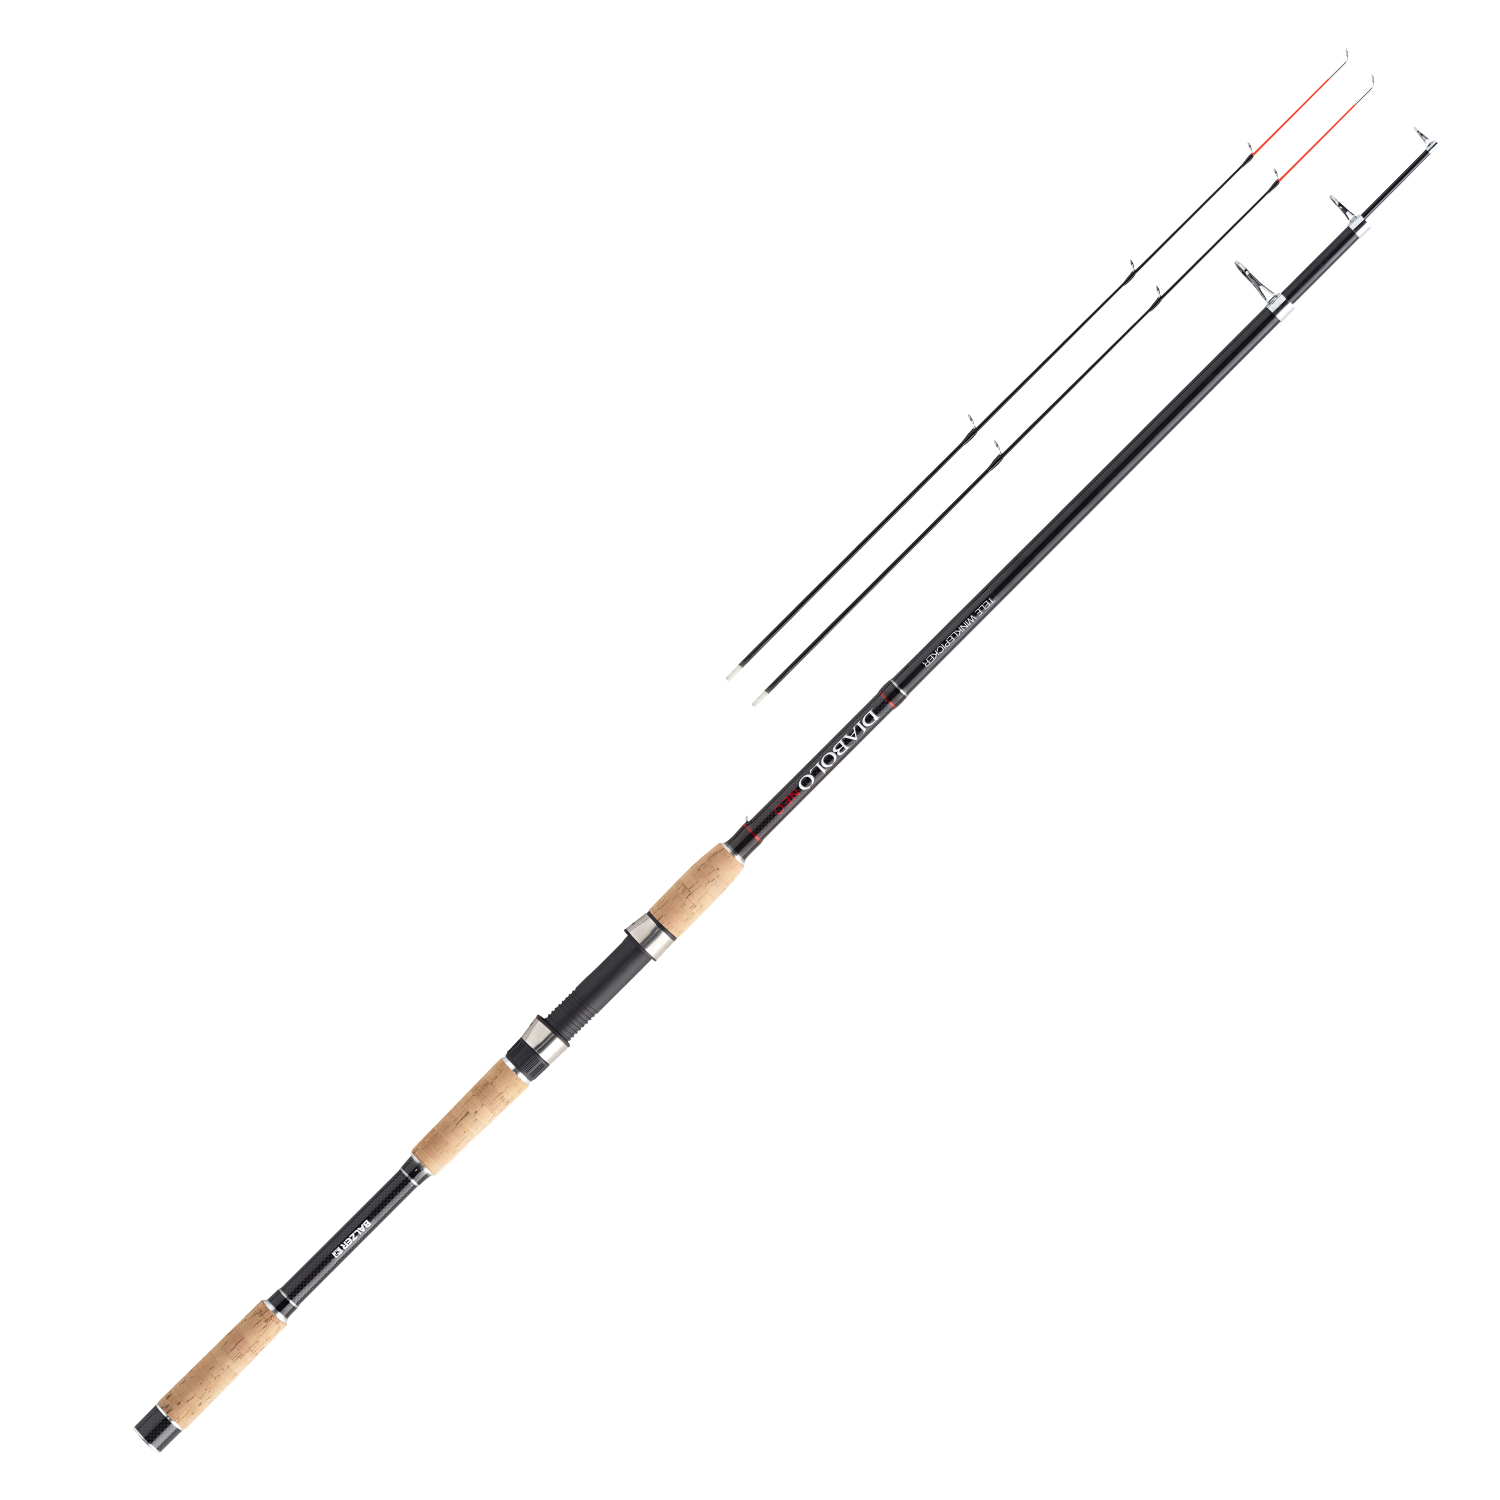 Balzer Balzer Diabolo Neo Tele Winkle Picker Fishing Rod 